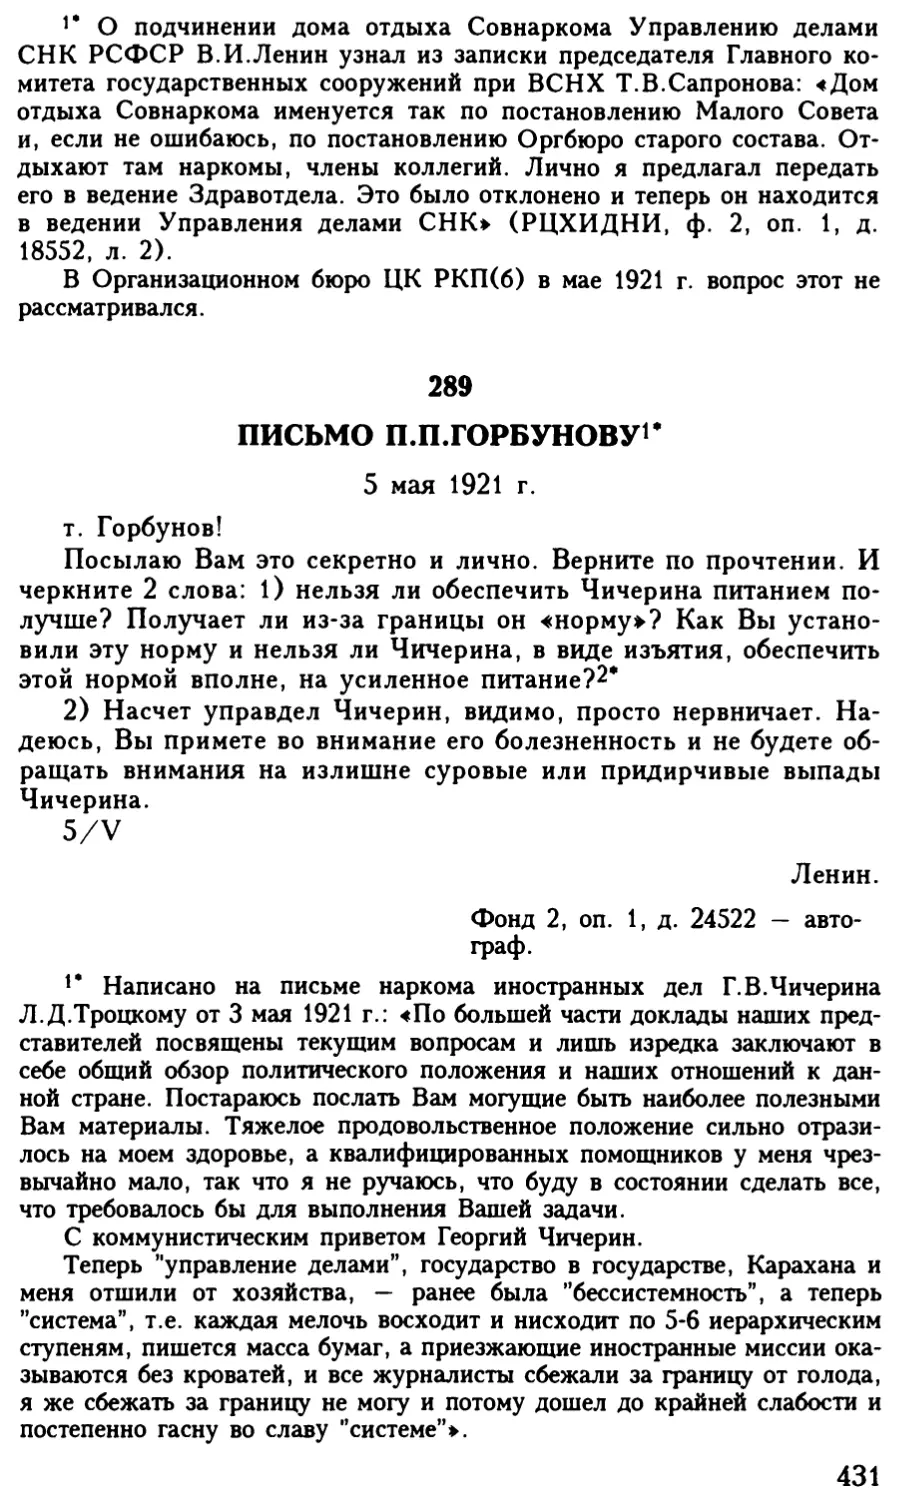 289. Письмо П.П.Горбунову. 5 мая 1921 г